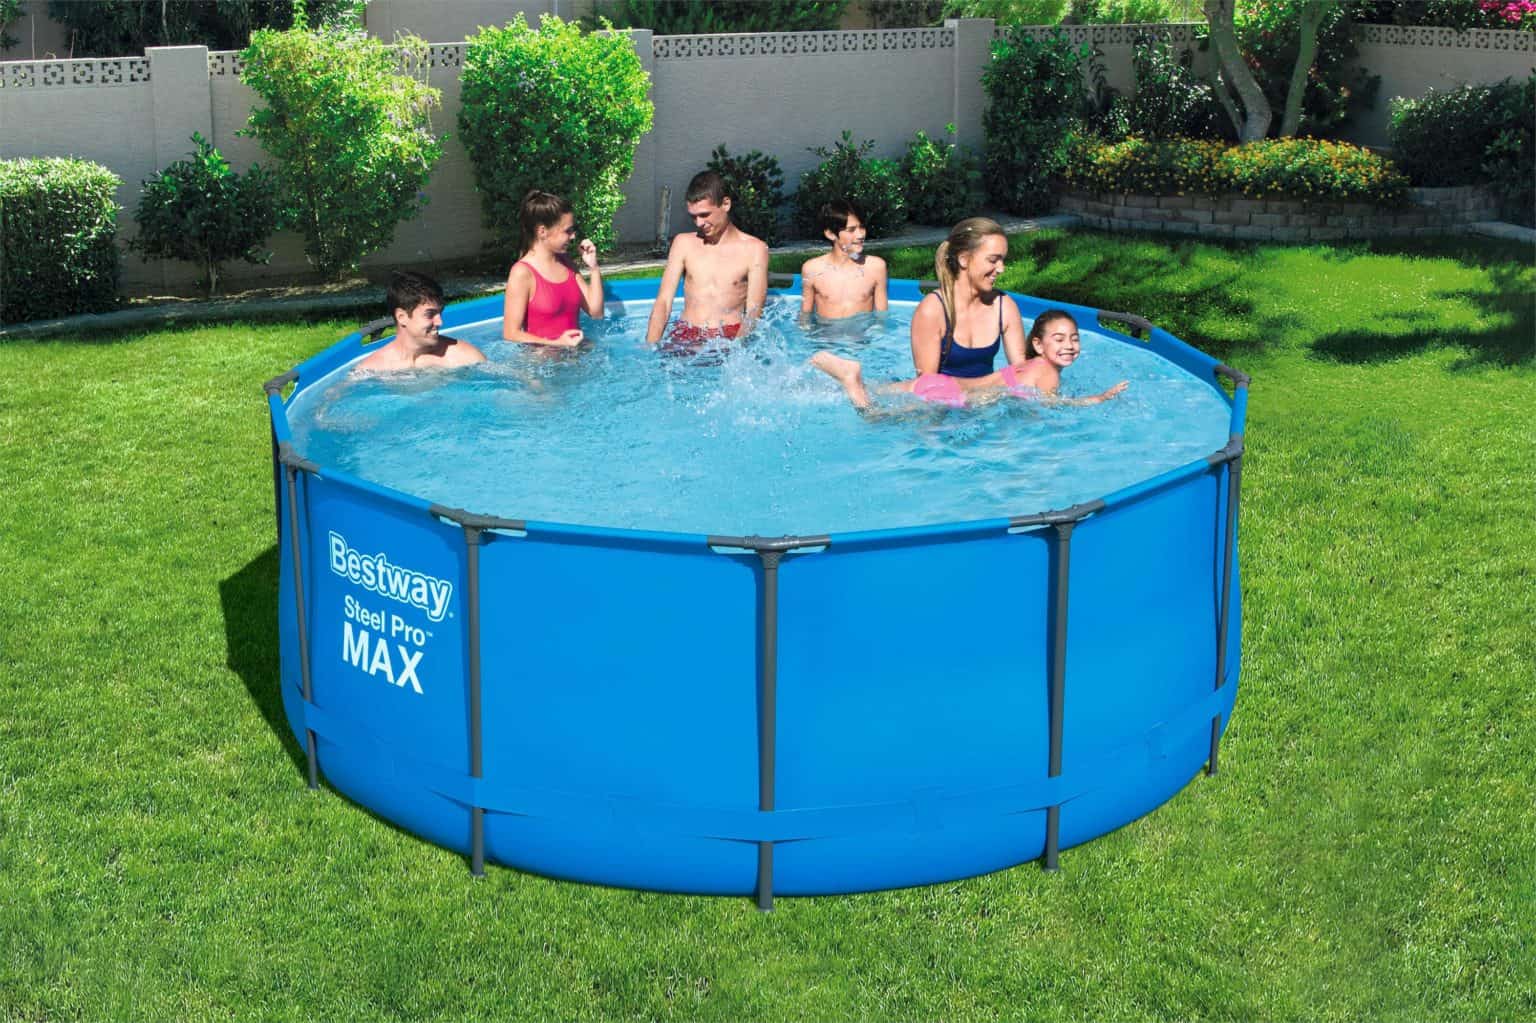 Bestway's Steel Pro MAX Pool Set (366cm X 122cm) | Le3ab Store